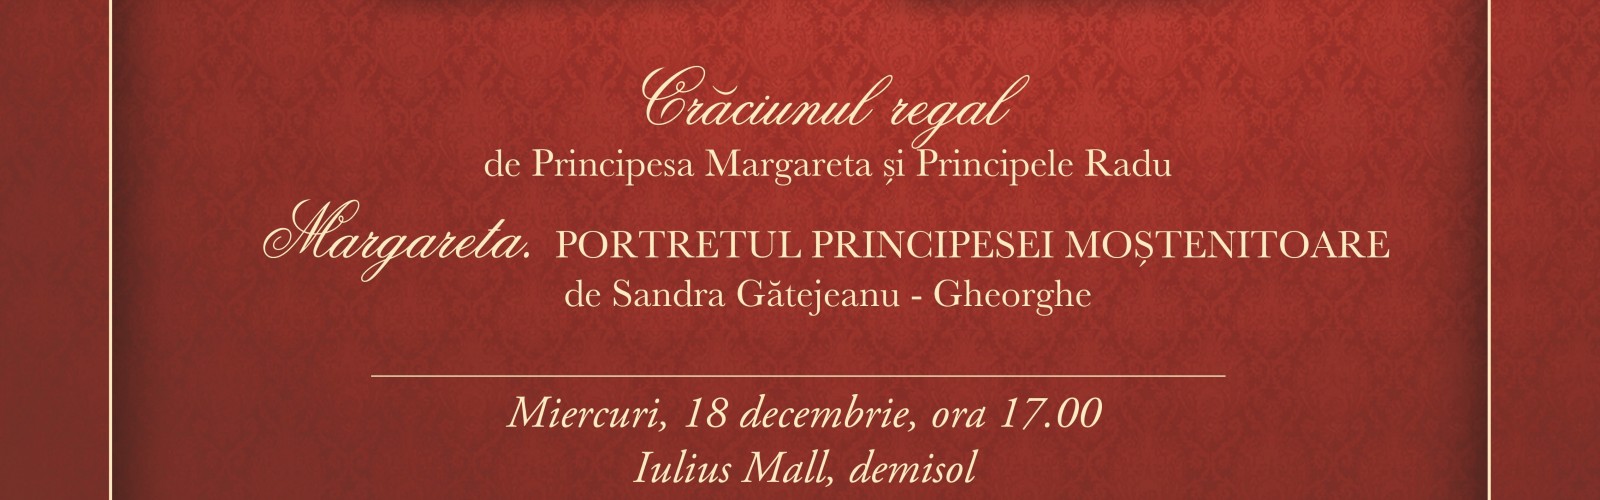 Principesa Margareta si Principele Radu aduc „Craciunul regal” in Timisoara